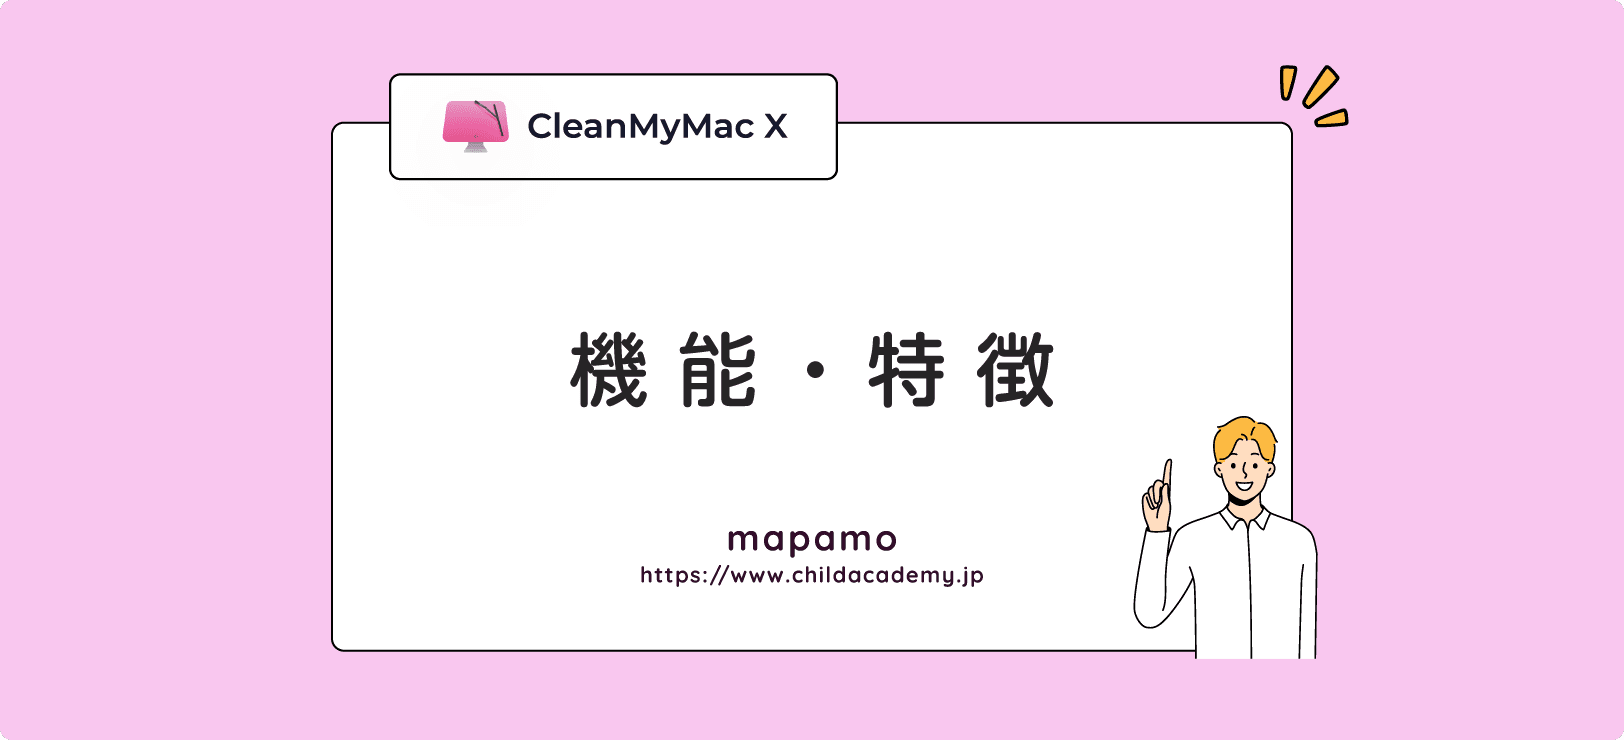 CleanMyMac Xの機能と特徴